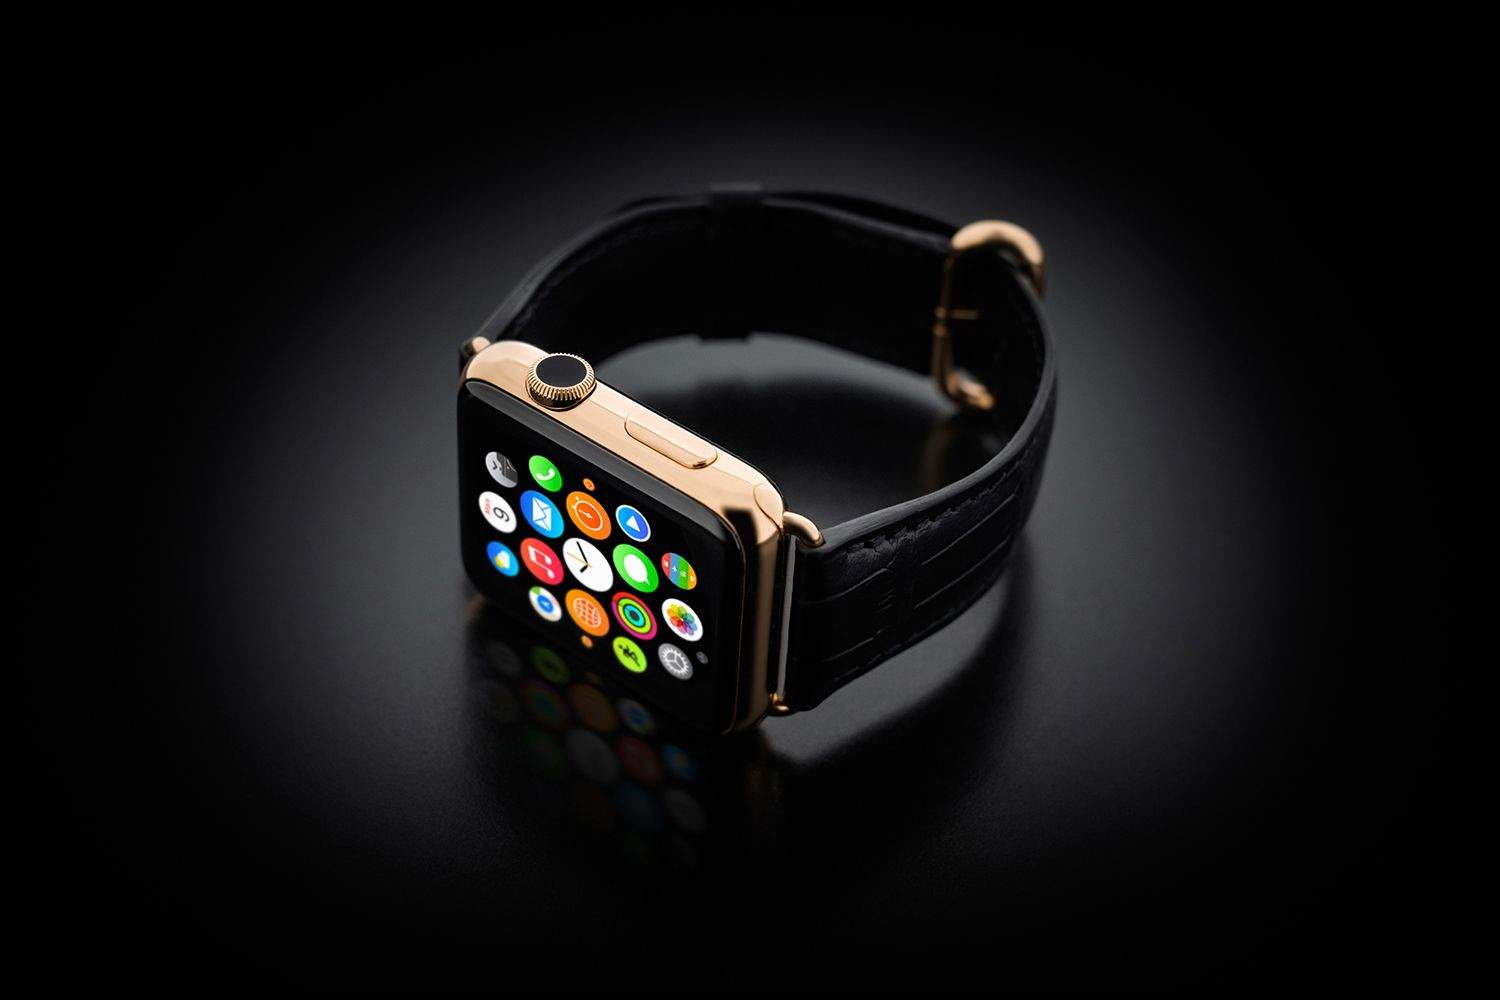 Apple watch offers